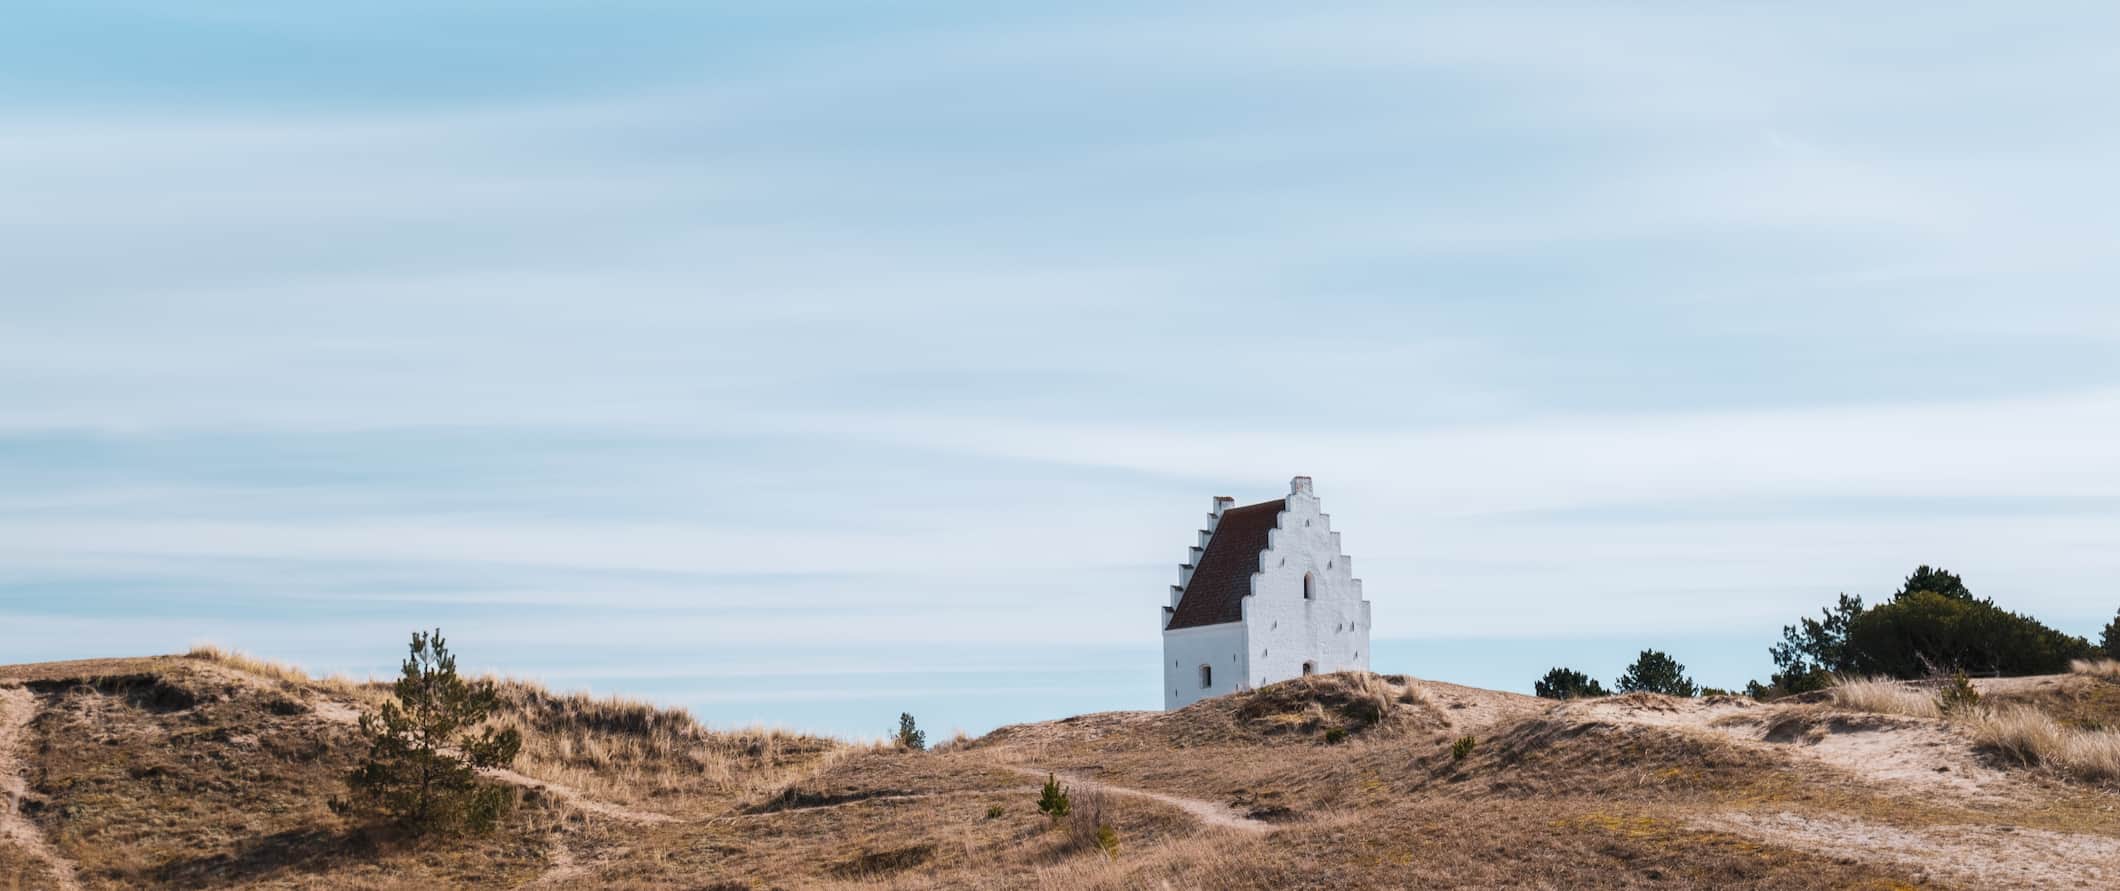 Uma pequena igreja branca na costa acidentada e varrida pelo vento da Jutlândia, na Dinamarca